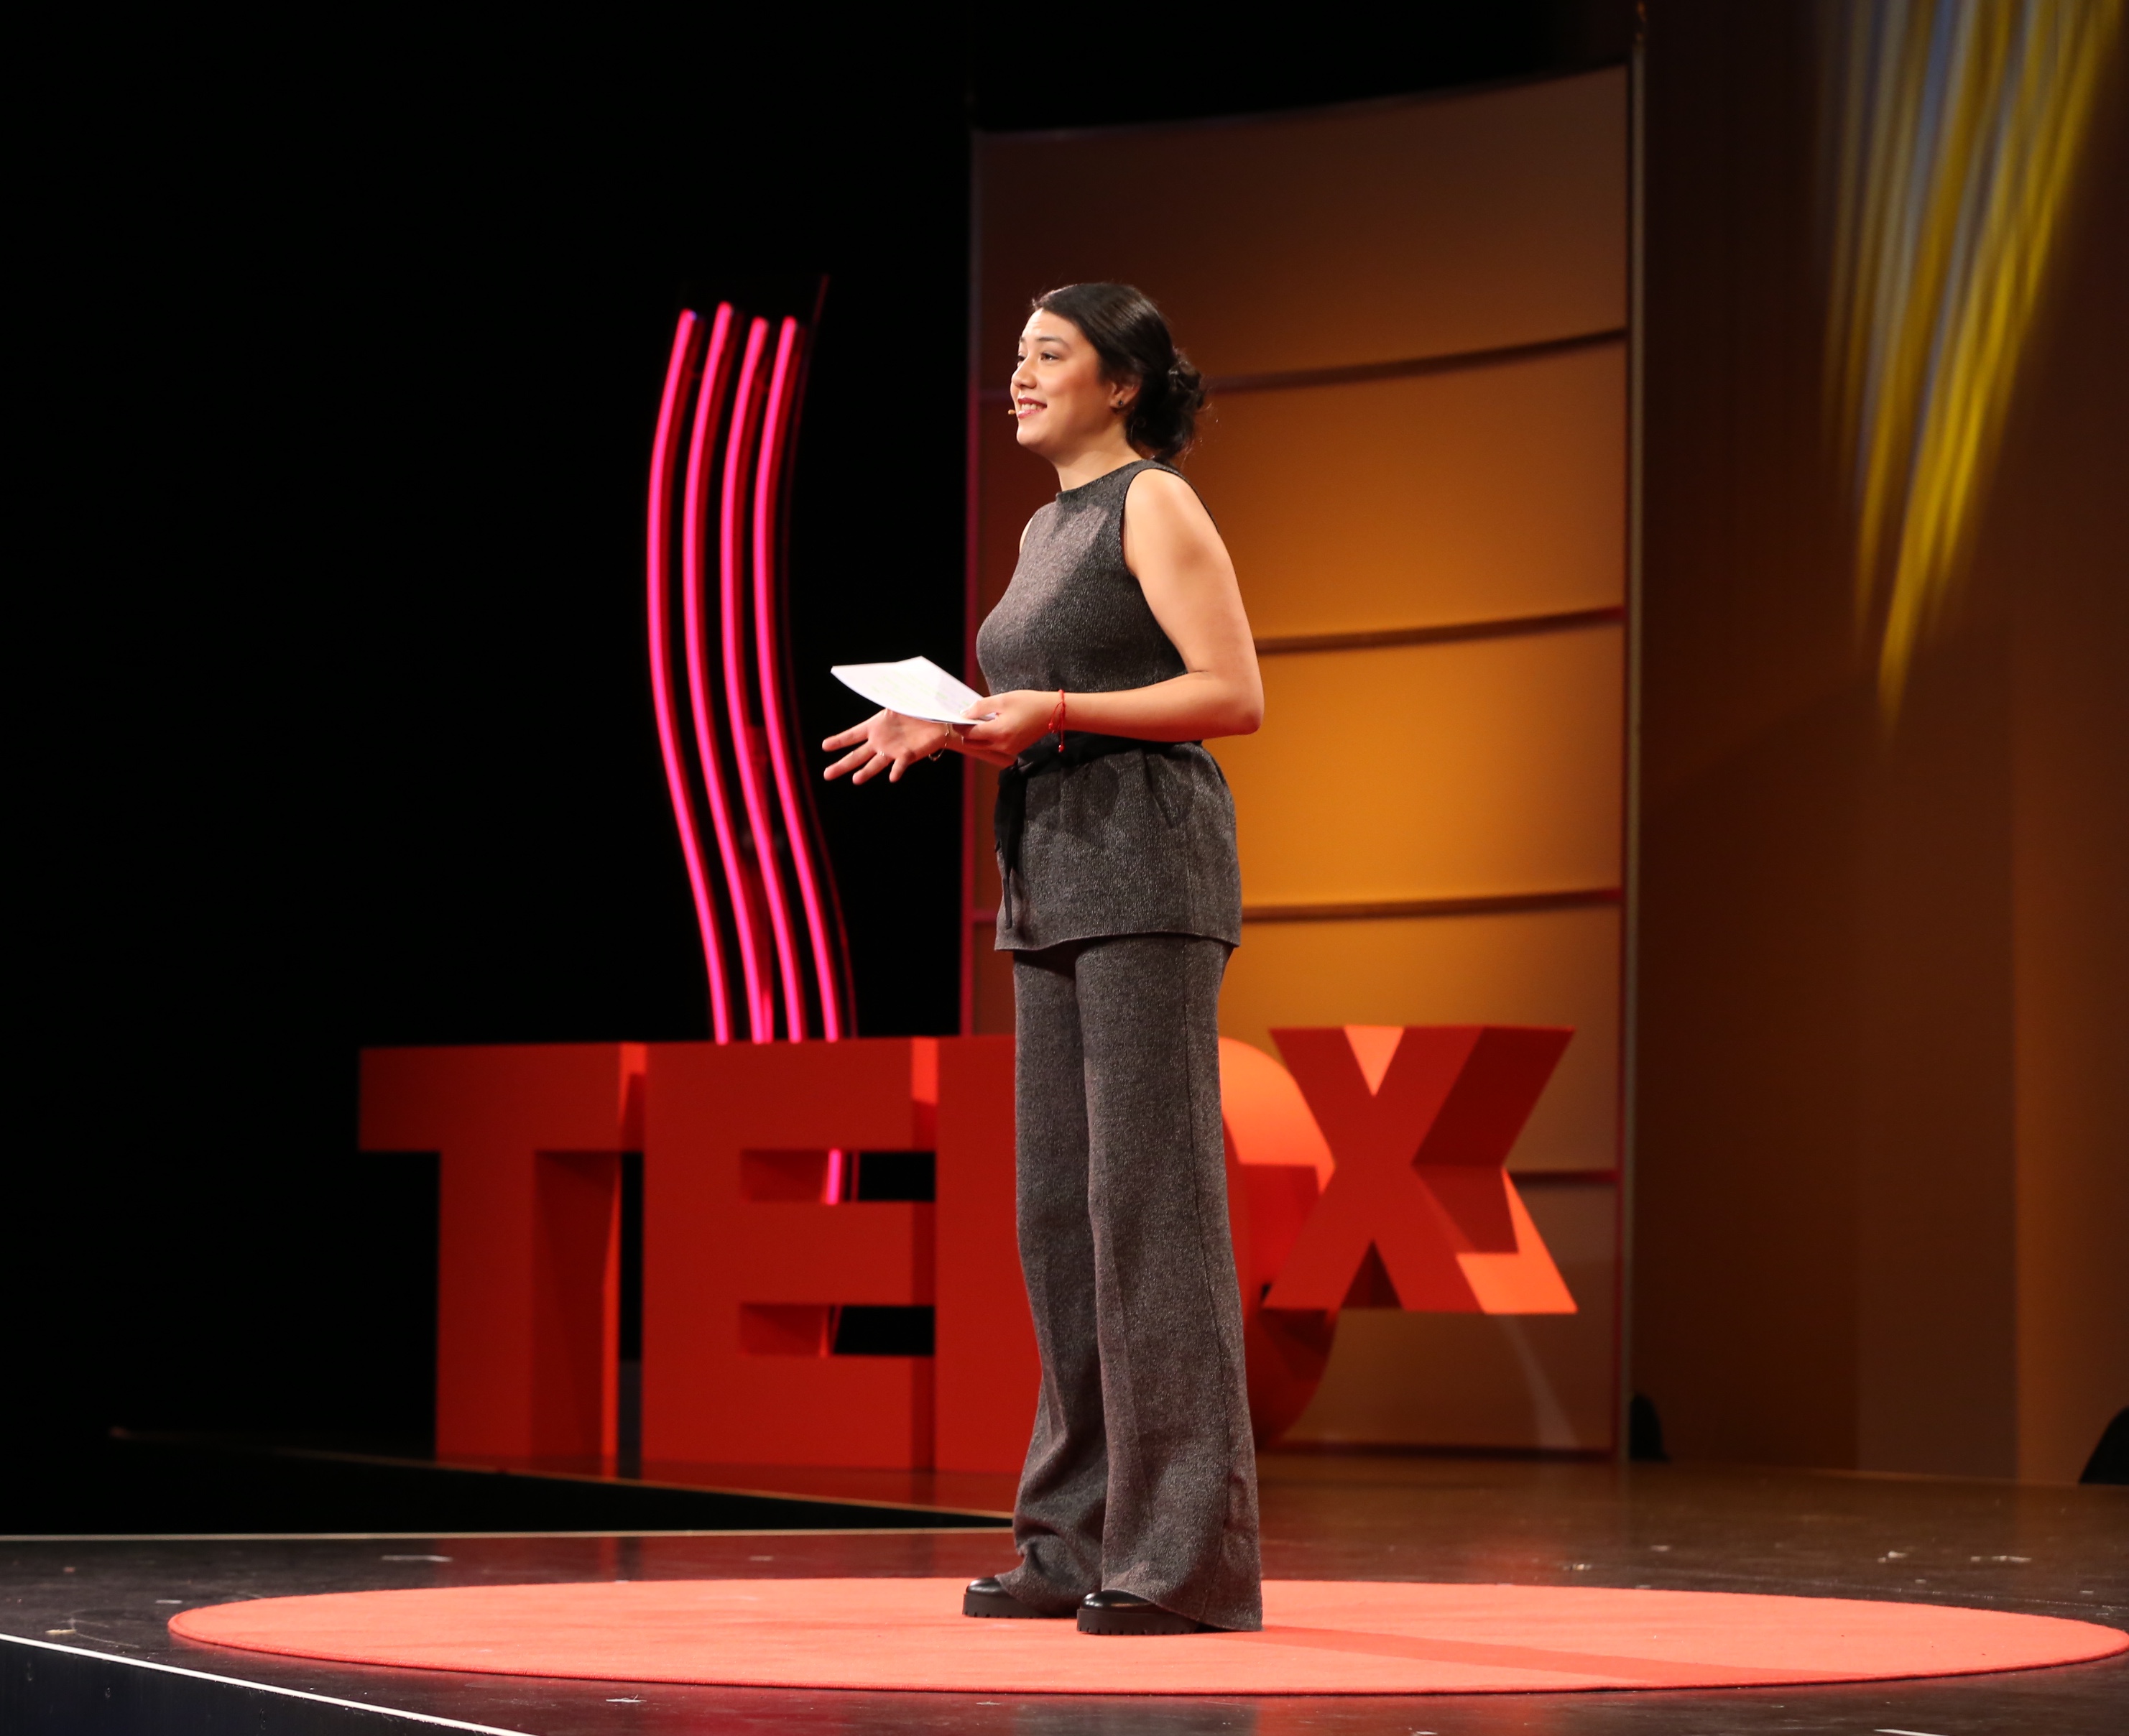 Foto: Tanya König als Gastgeberin bei TEDxZurich 2015